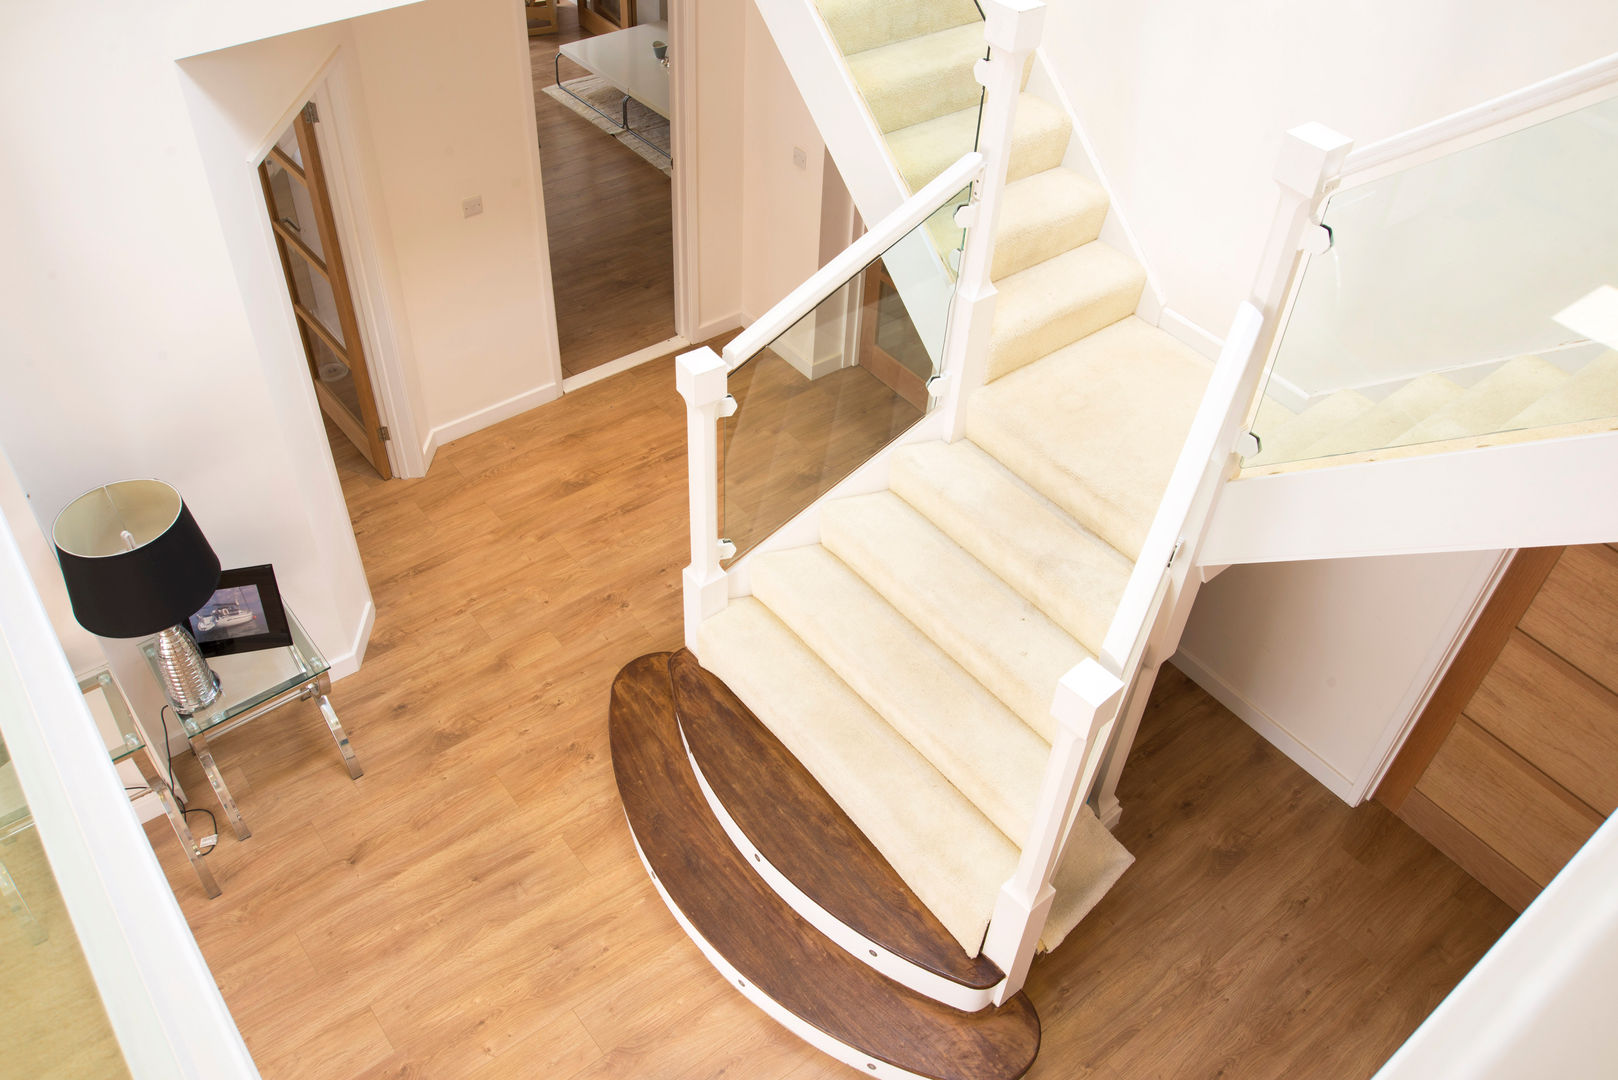 Stairs dwell design Pasillos, vestíbulos y escaleras modernos